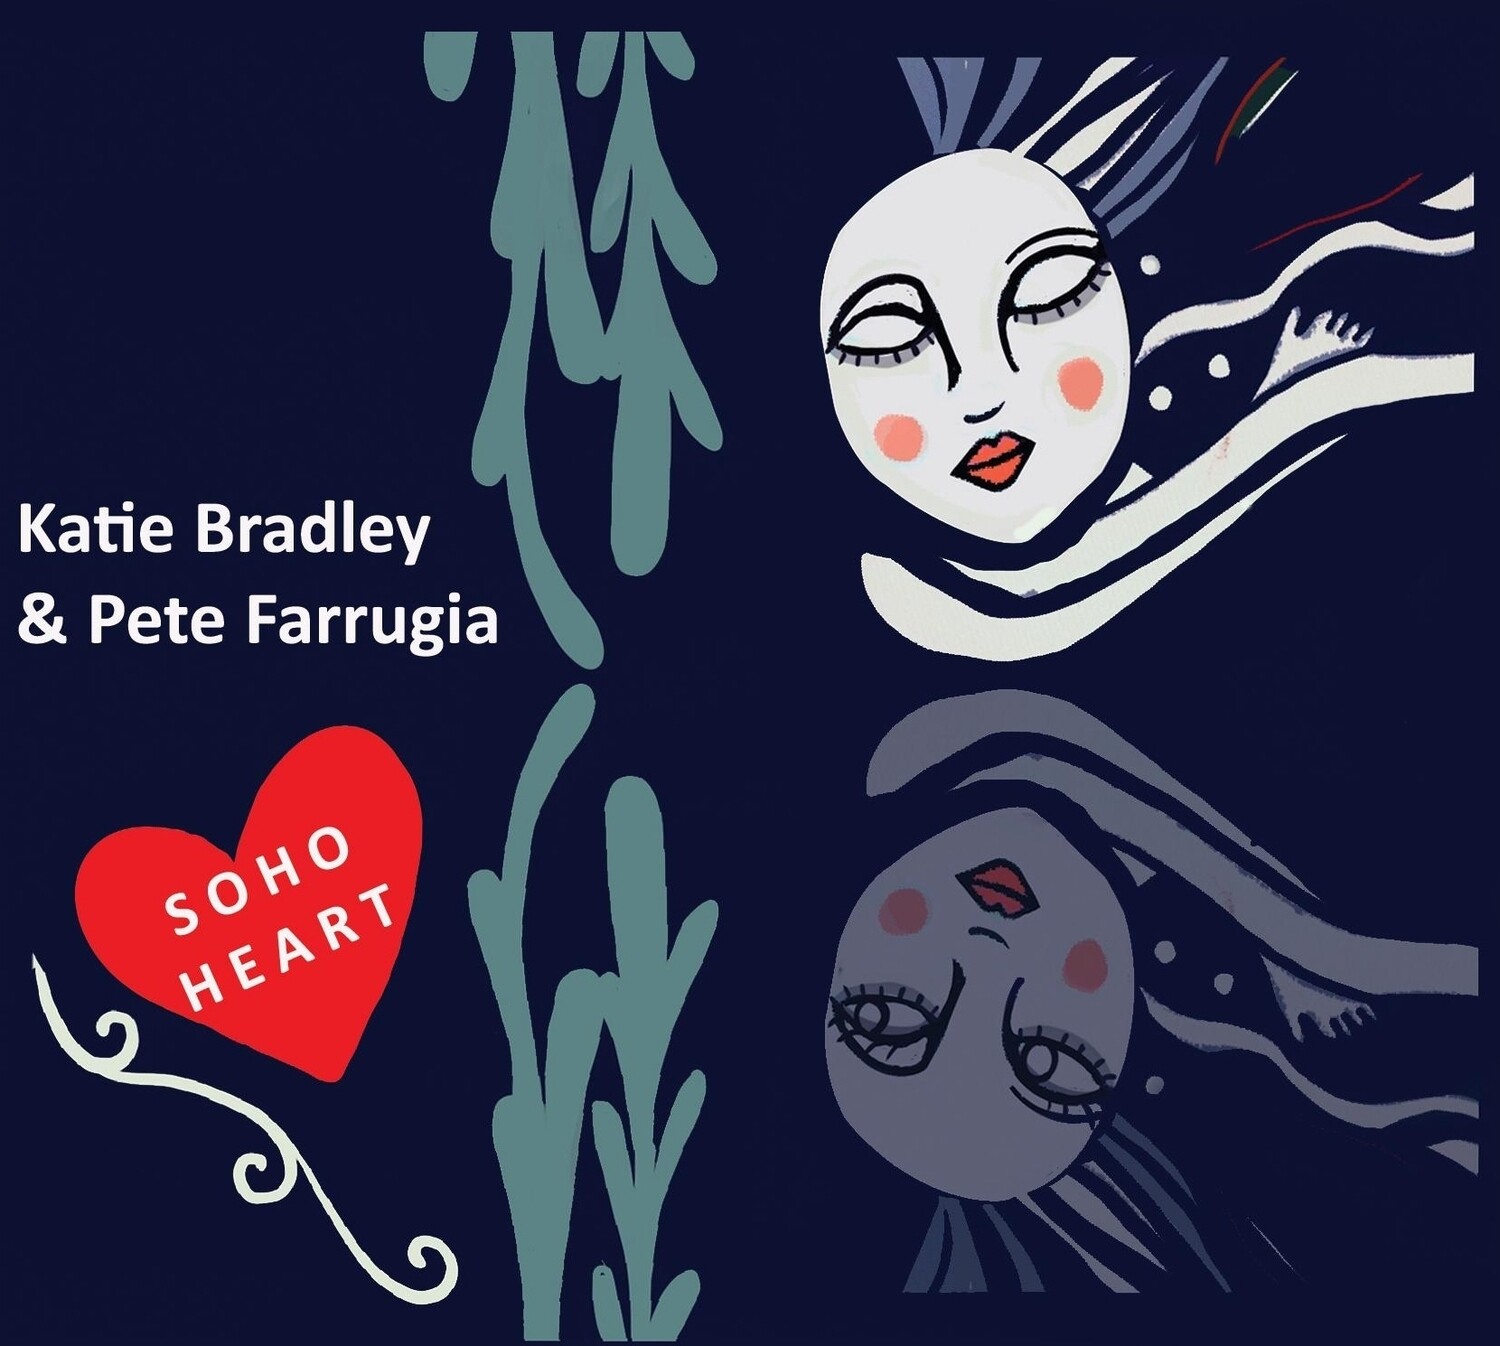 Soho Heart CD by Katie Bradley & Pete Farrugia